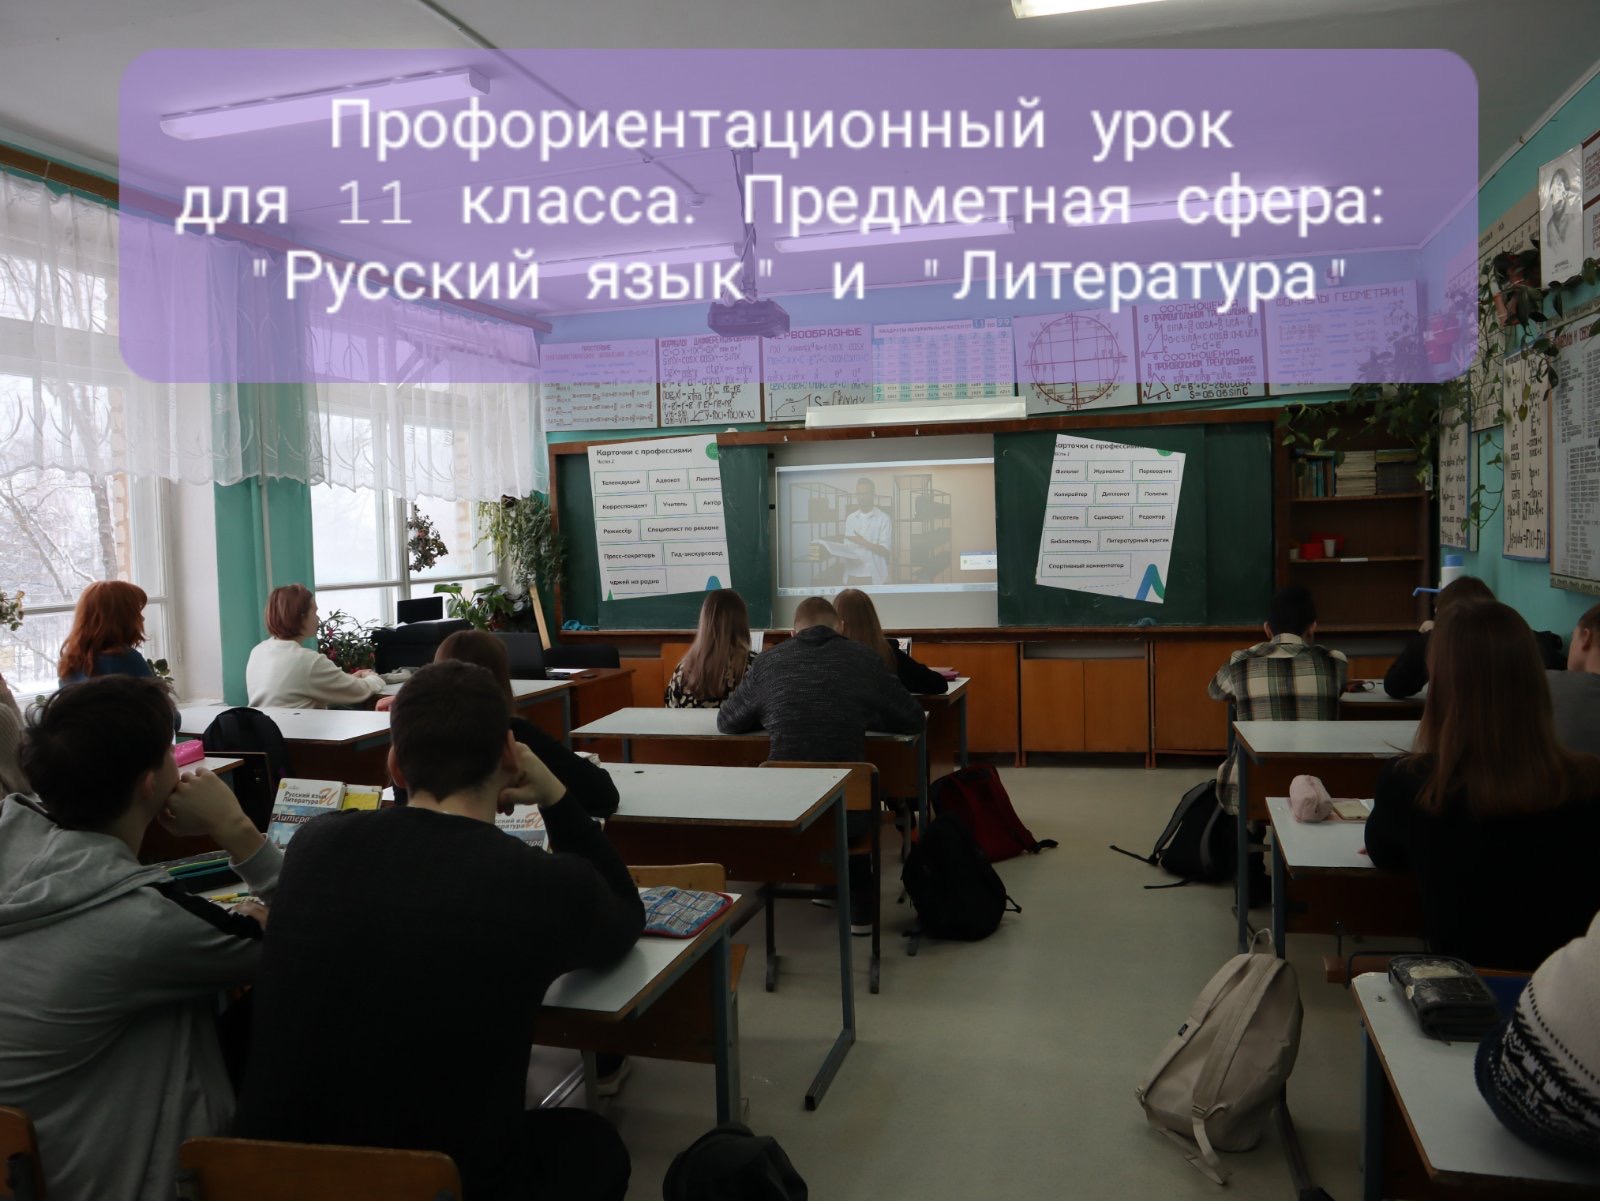 Профориентационный урок, 11 класс. Предметная область: &amp;quot;Русский язык и литература&amp;quot;..